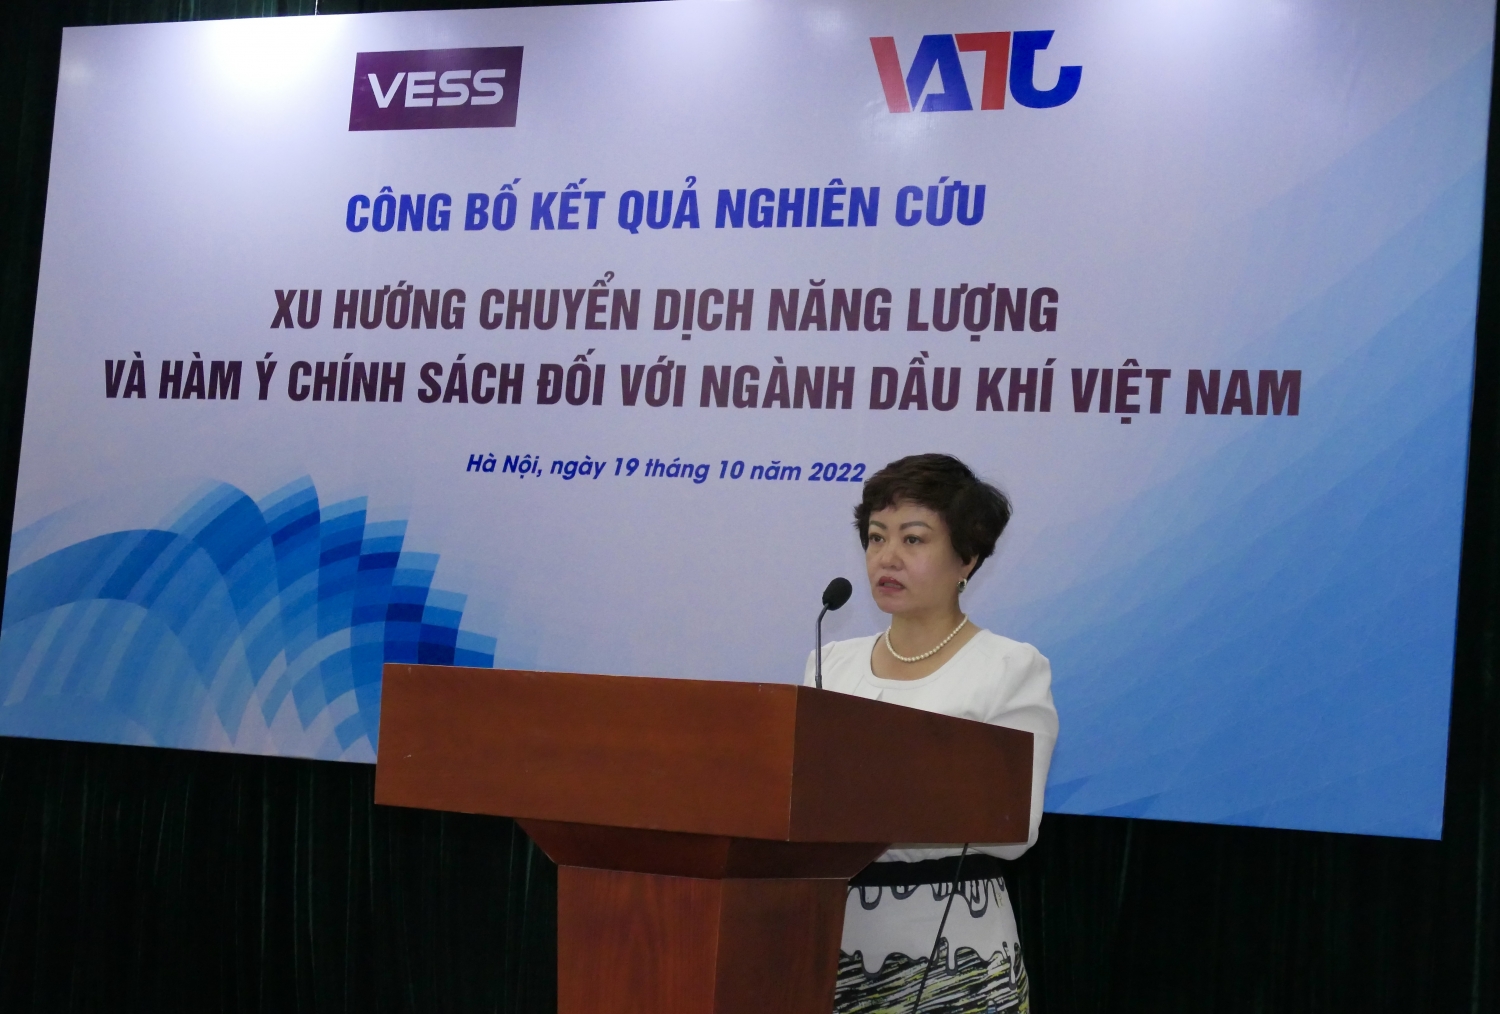 bà Nguyễn Thu Hương, Quản lý cấp cao, Tổ chức Oxfam tại Việt Nam